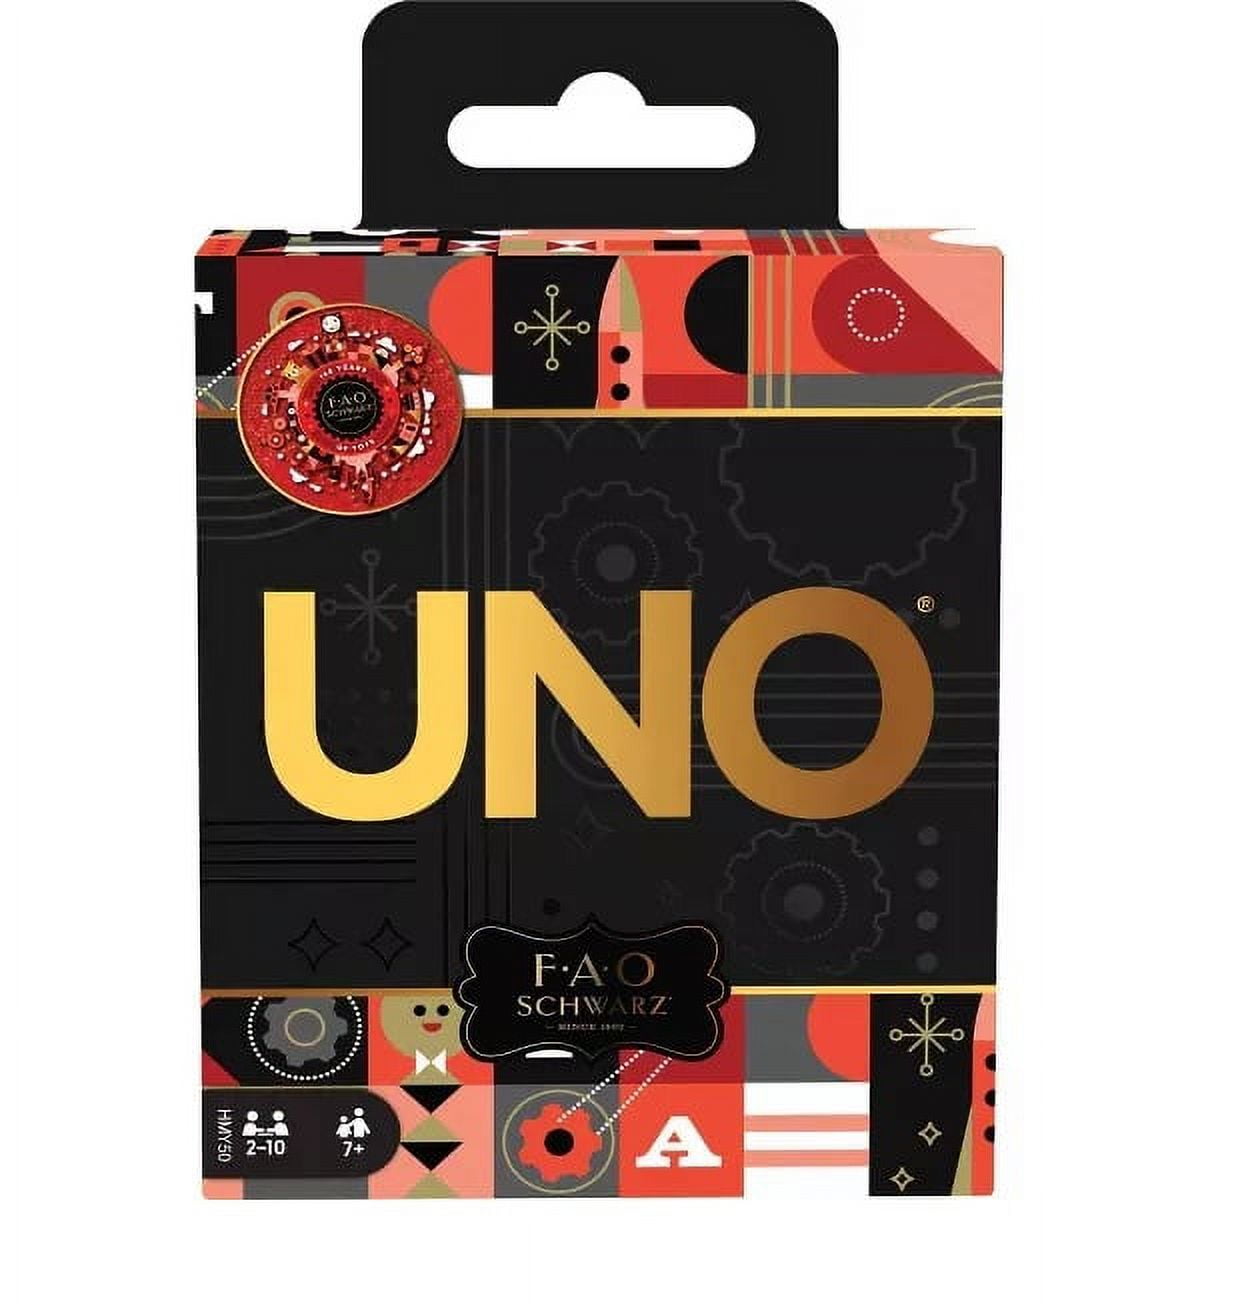 UNO Fao Schwarz Themed Card Game